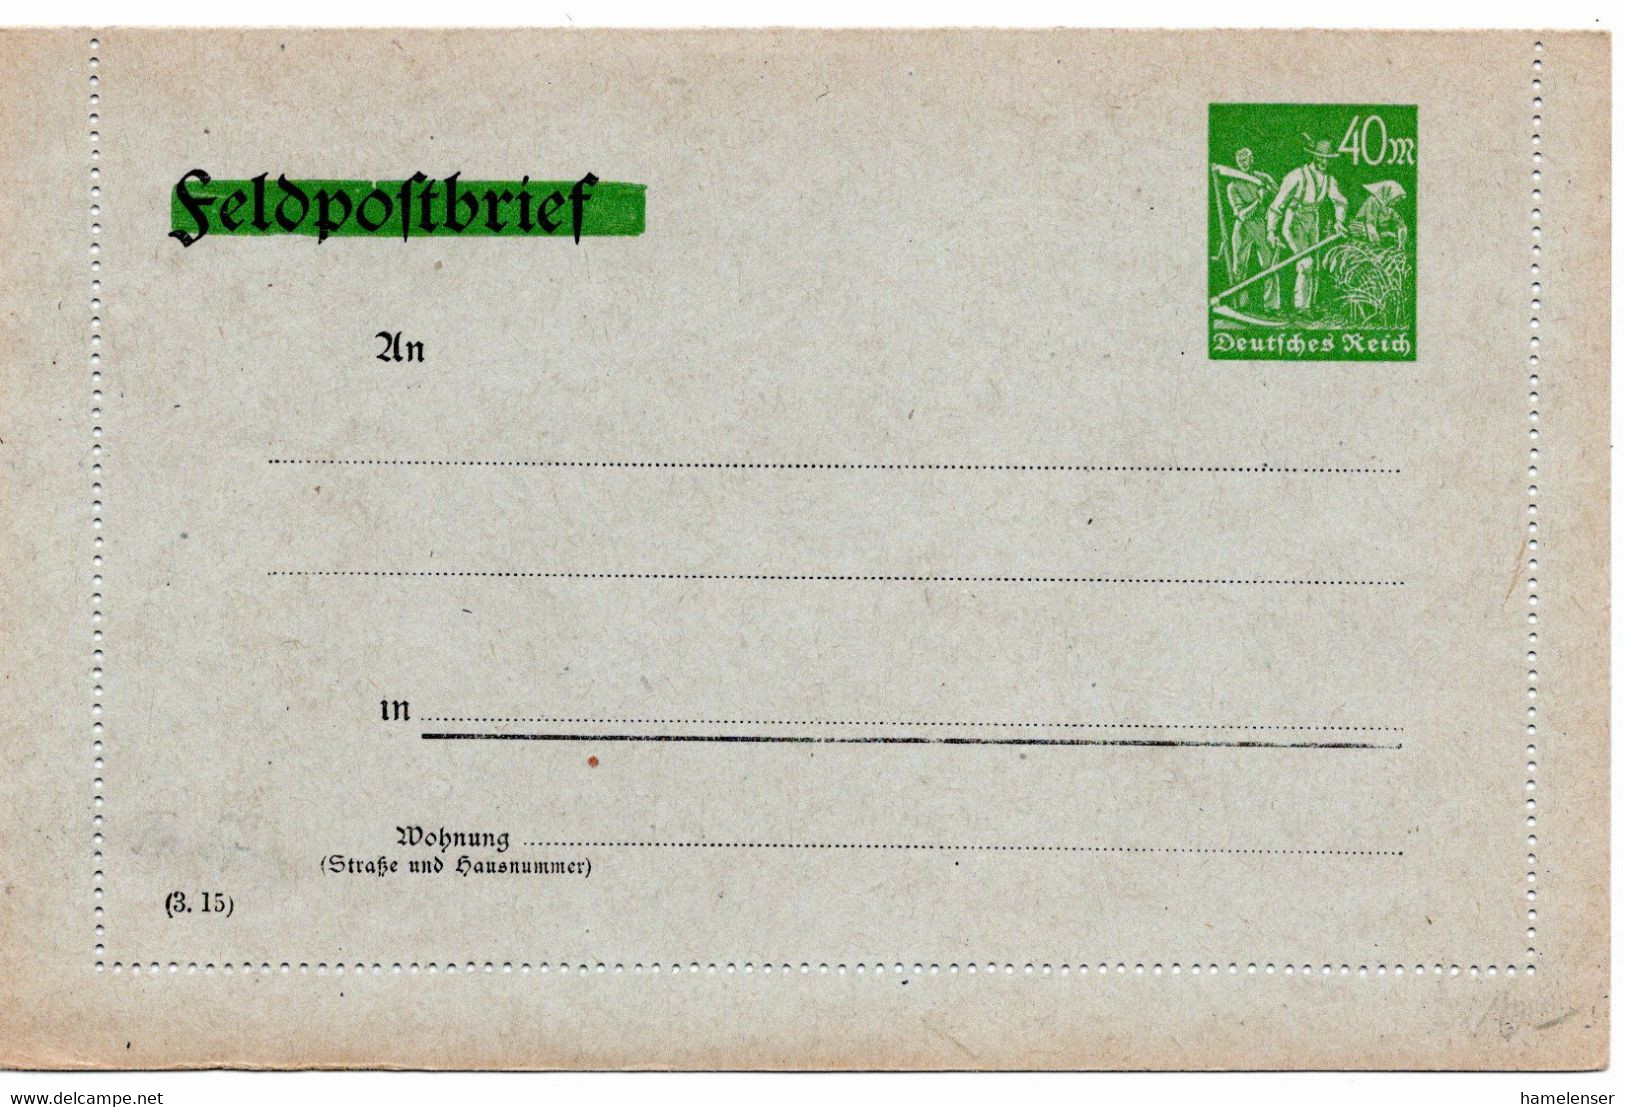 54631 - Deutsches Reich - 1923 - 40M Schnitter PGAKtenBf A Feldpost-Kartenbrief-Vordruck, Ungebraucht - Covers & Documents